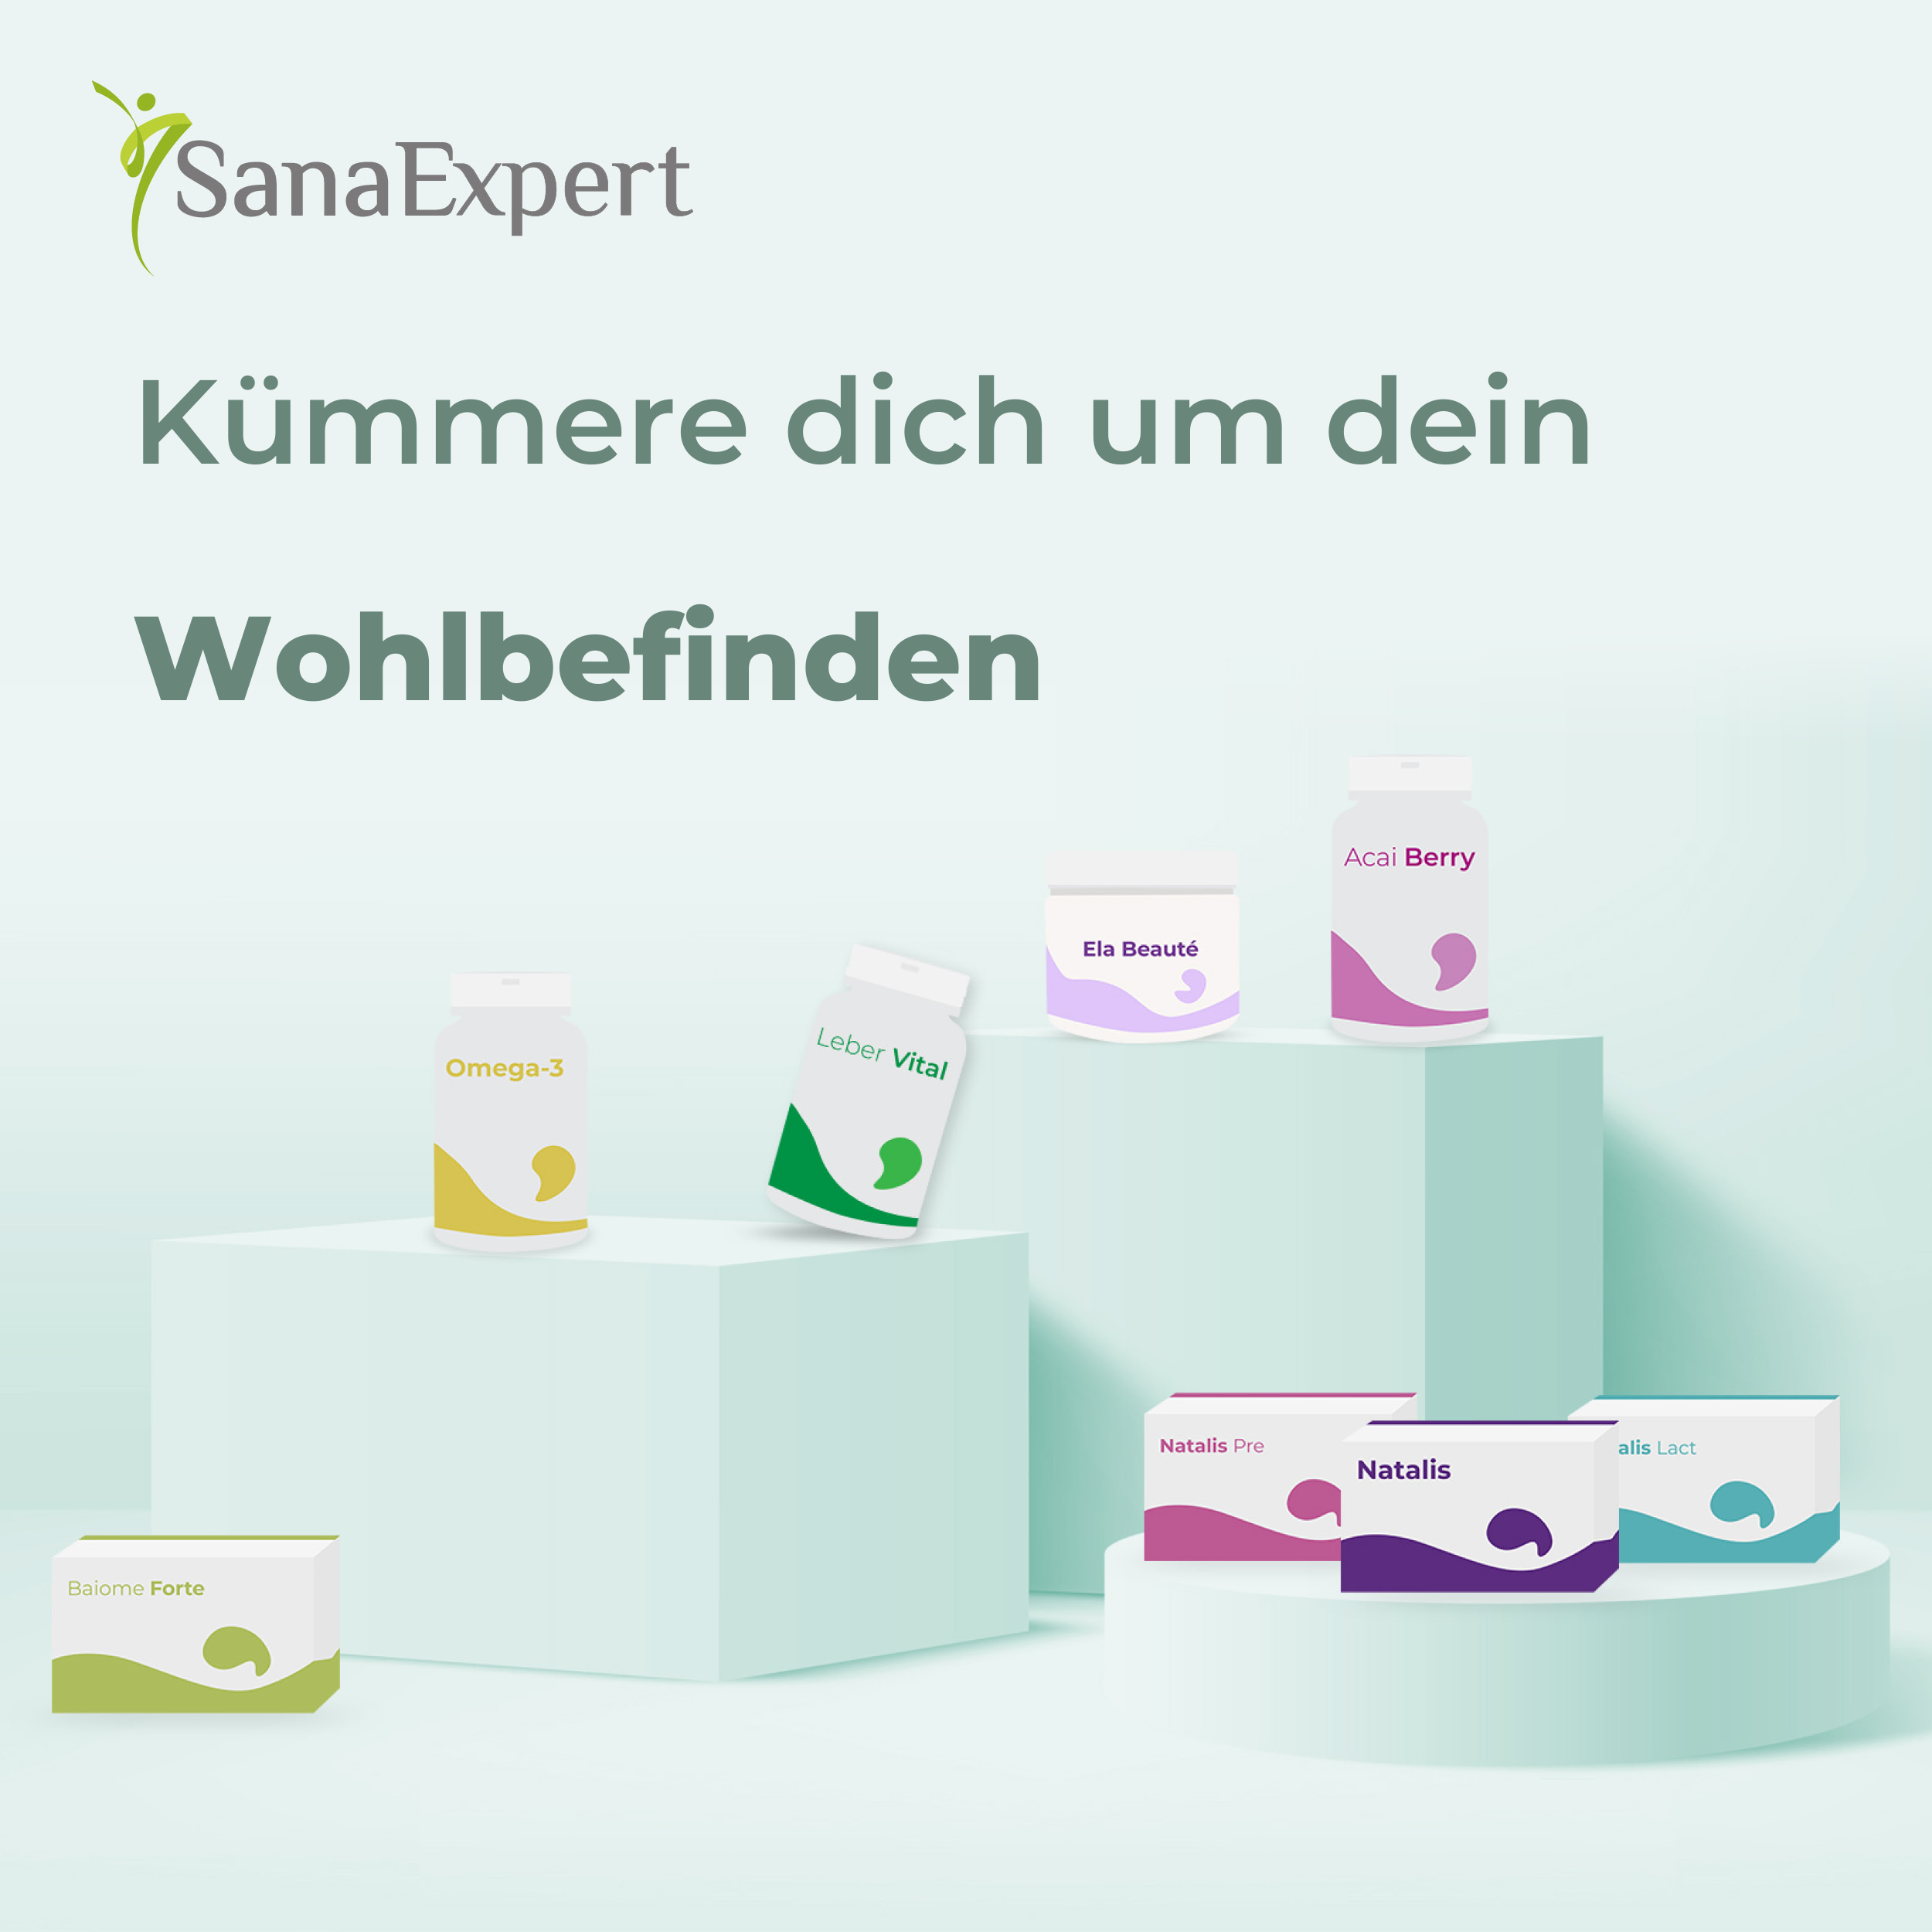 Verschiedene SanaExpert Nahrungsergänzungsmittel präsentiert auf Podesten mit der Botschaft "Kümmere dich um dein Wohlbefinden", betont durch ein frisches, grünes Design.